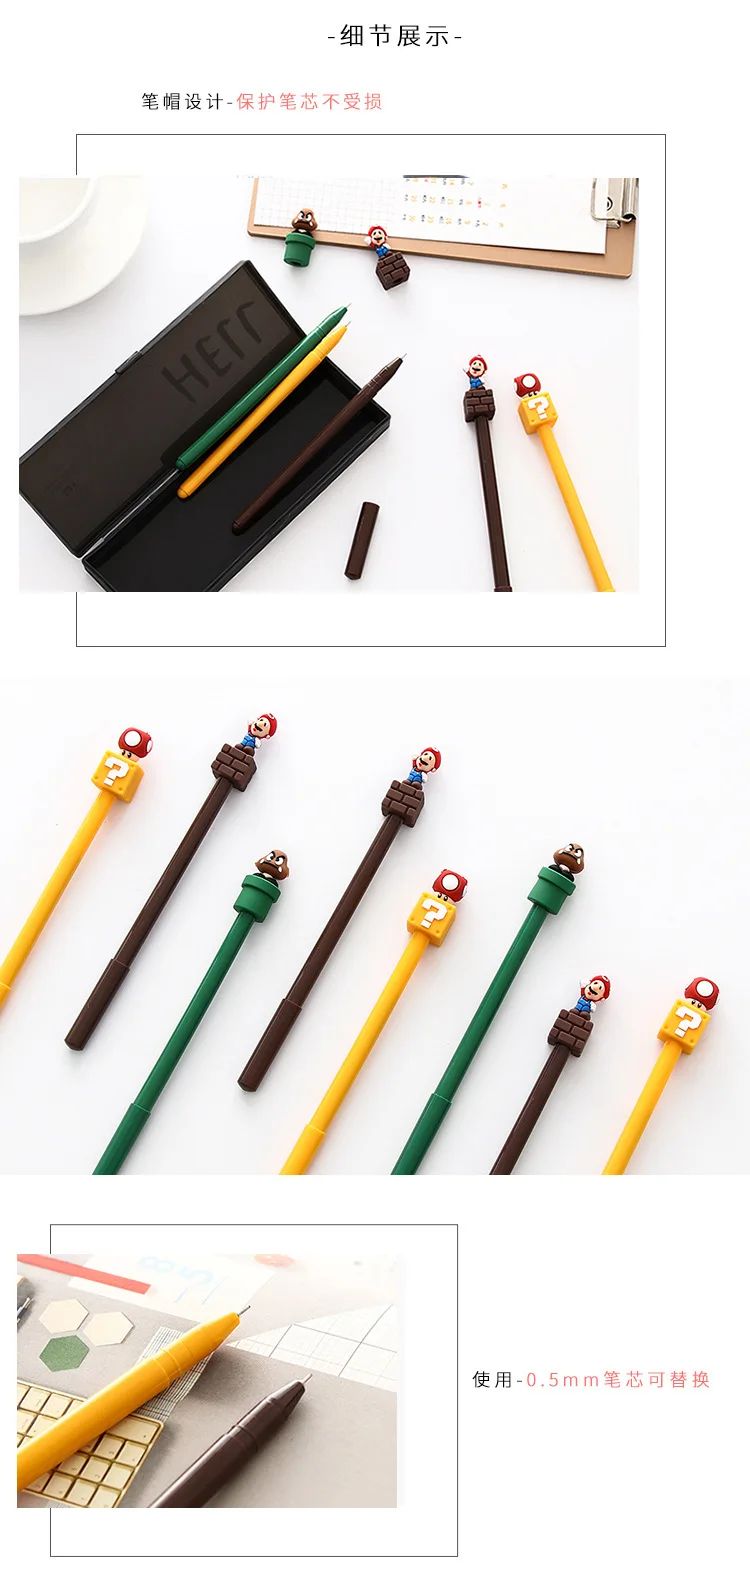 Фантастическая Супер Марио гелевая ручка подпись ручка Escolar Papelaria школьные офисные принадлежности рекламный подарок